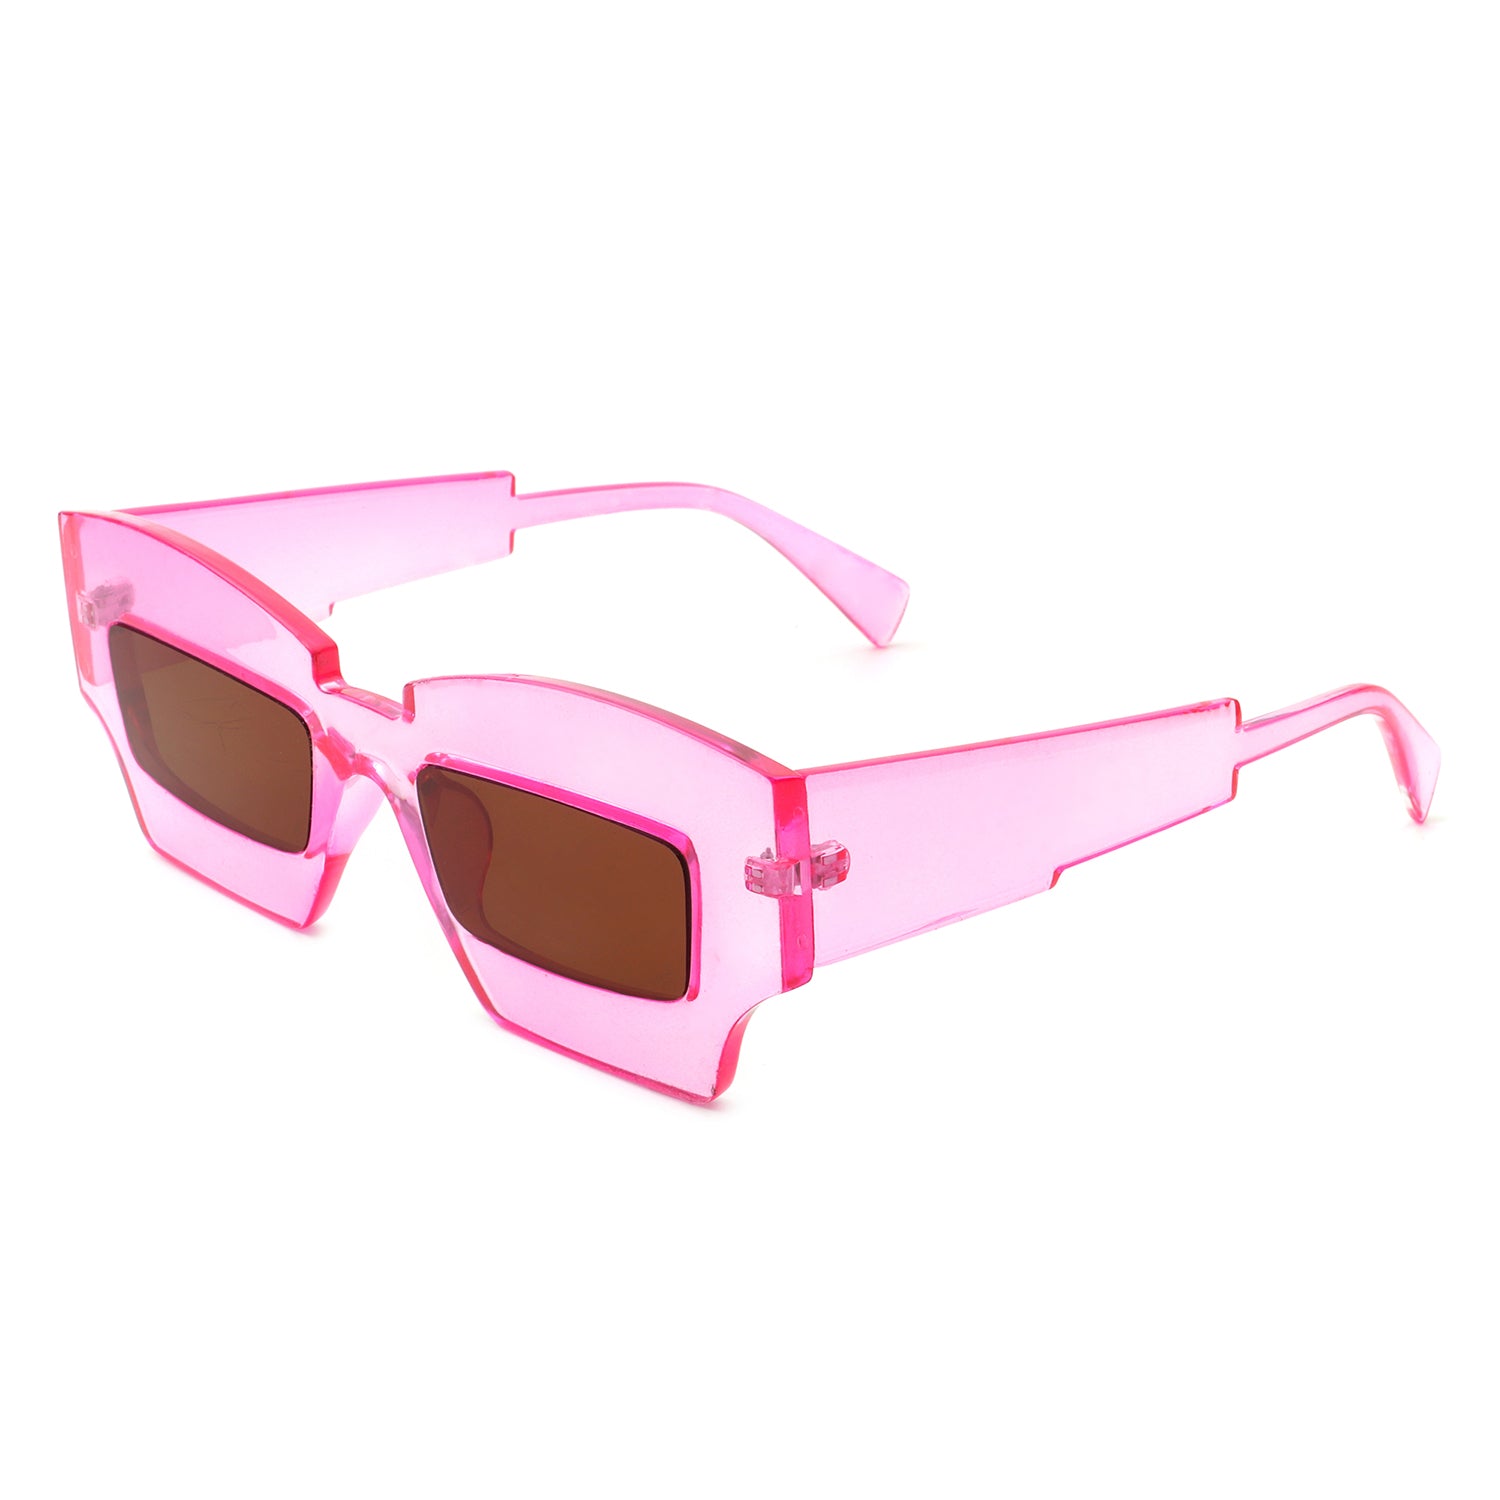 HS1140 - Futuristic Square Chunky Narrow Irregular Tinted Fashion Sunglasses